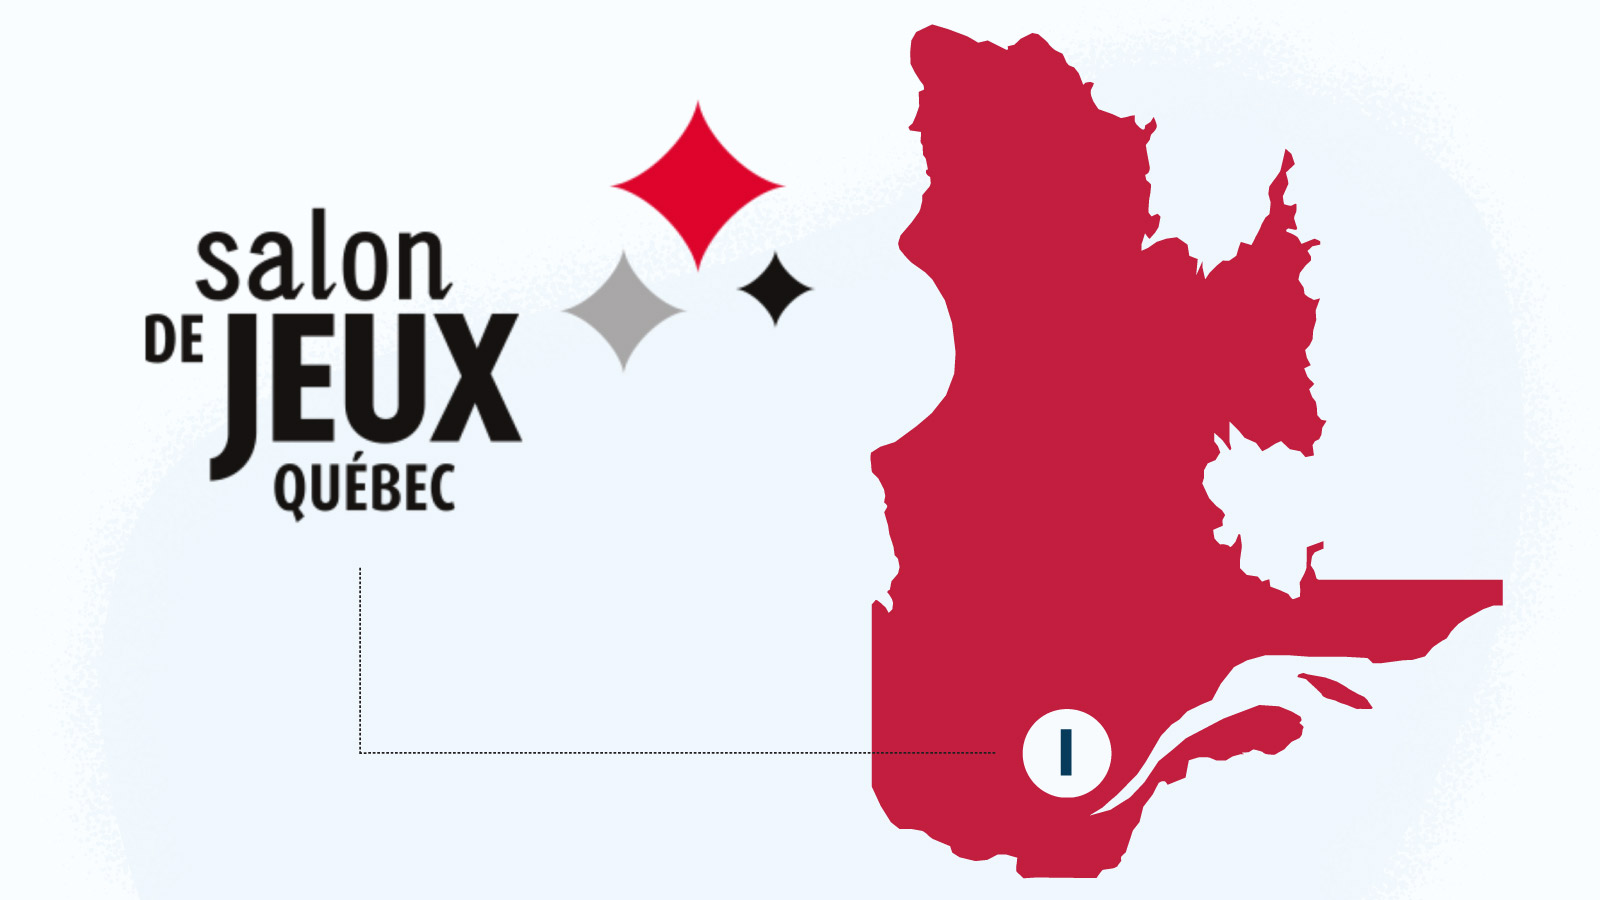 Combien de casinos y a-t-il dans la ville de Quebec